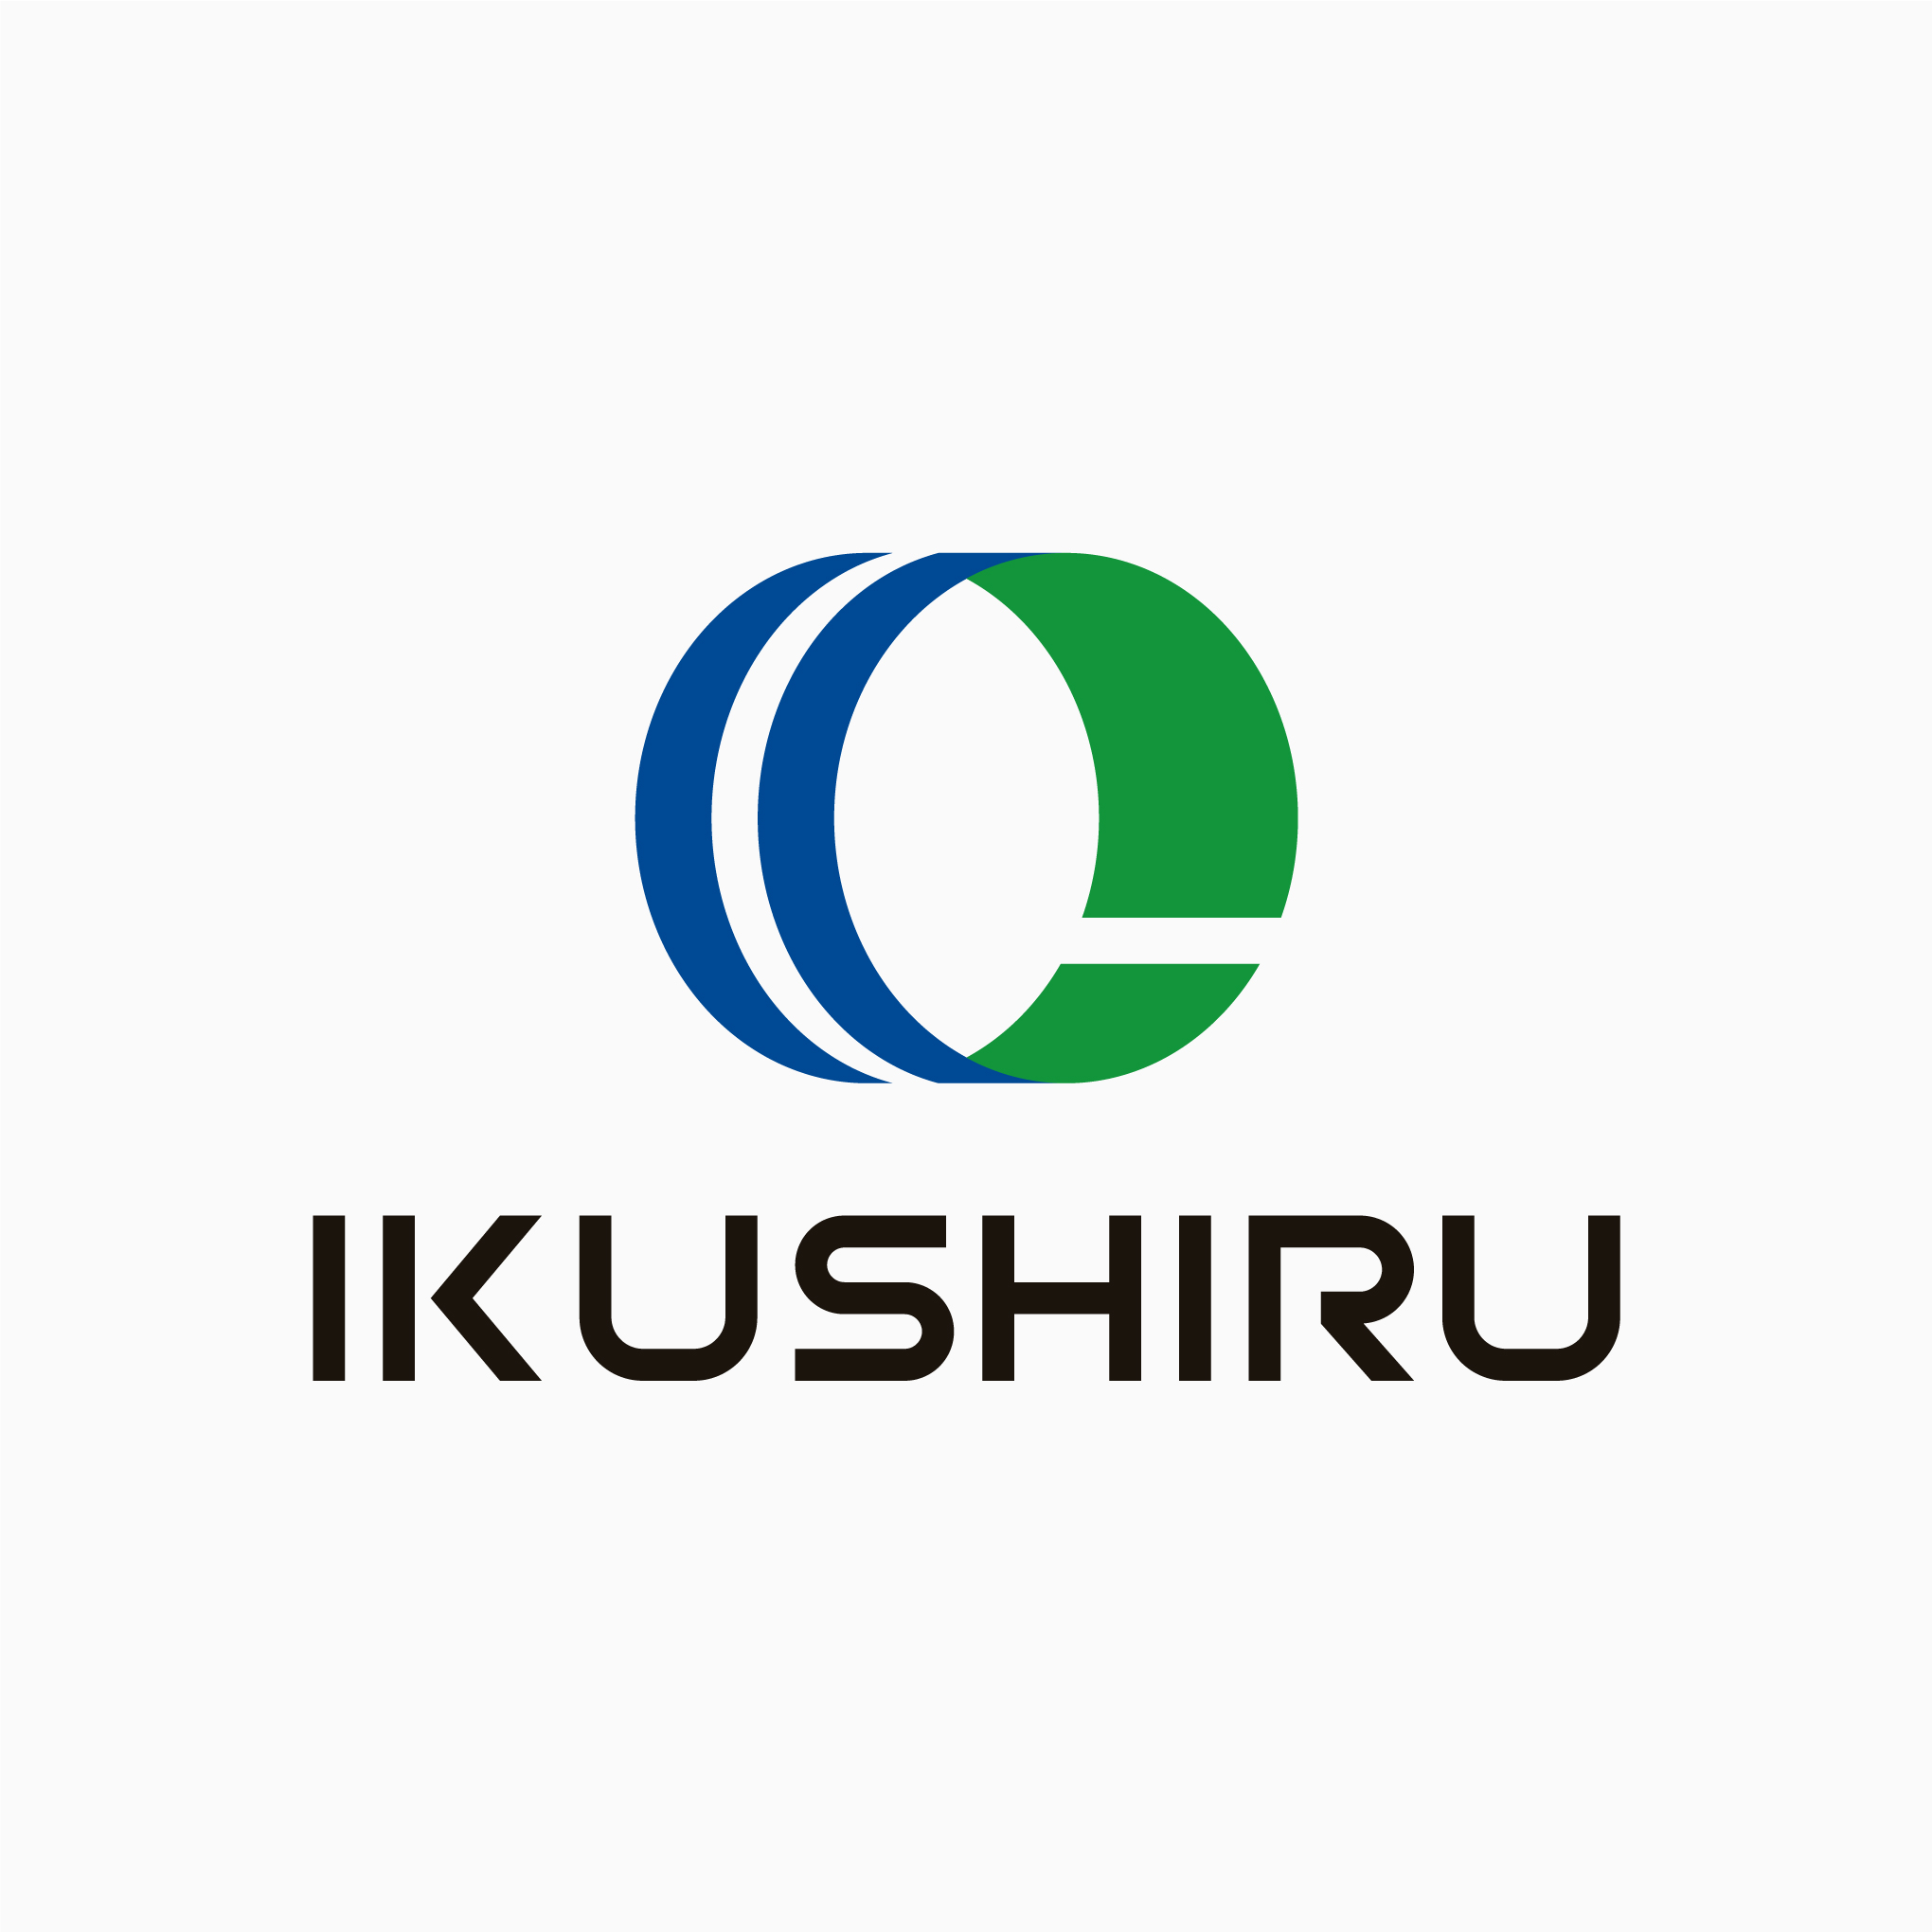 IKUSHIRU